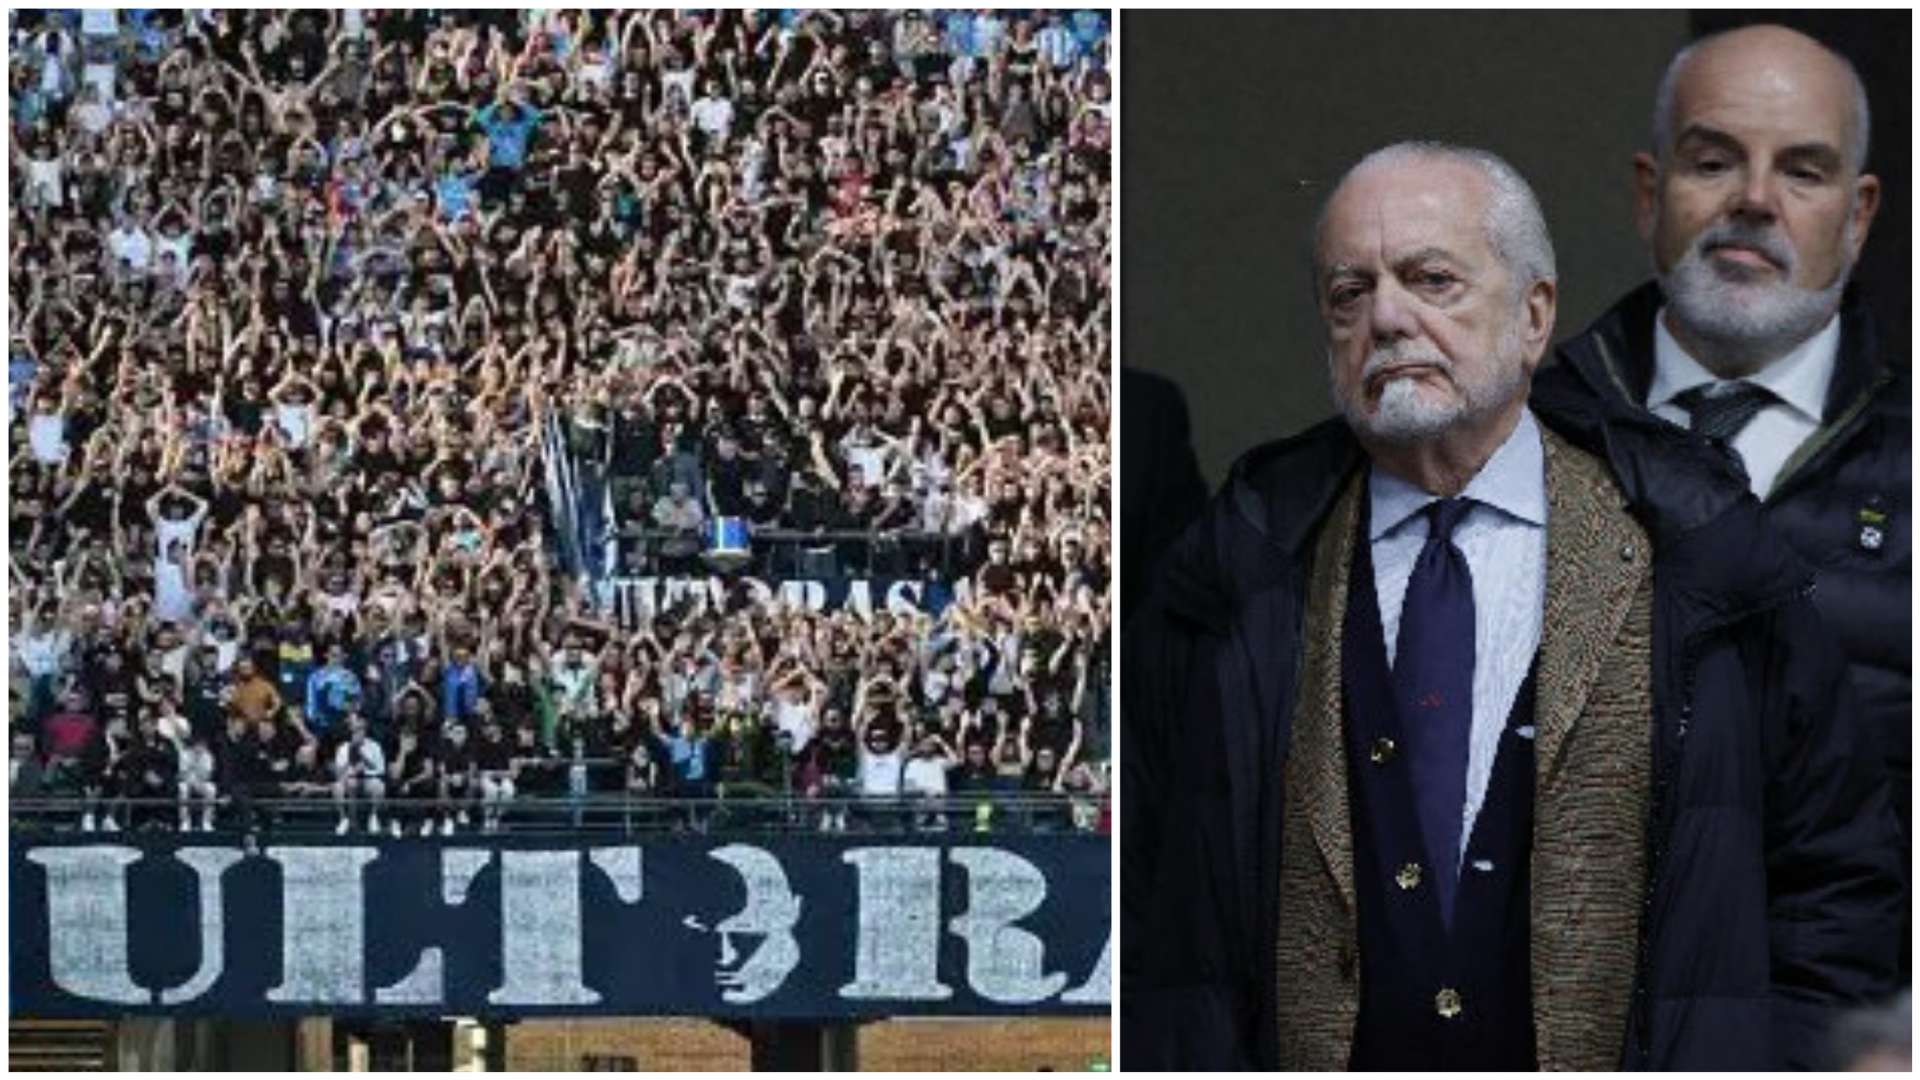 I tifosi del Napoli in silenzio per 17 minuti: poi cori contro De Laurentiis, squadra e Calzona